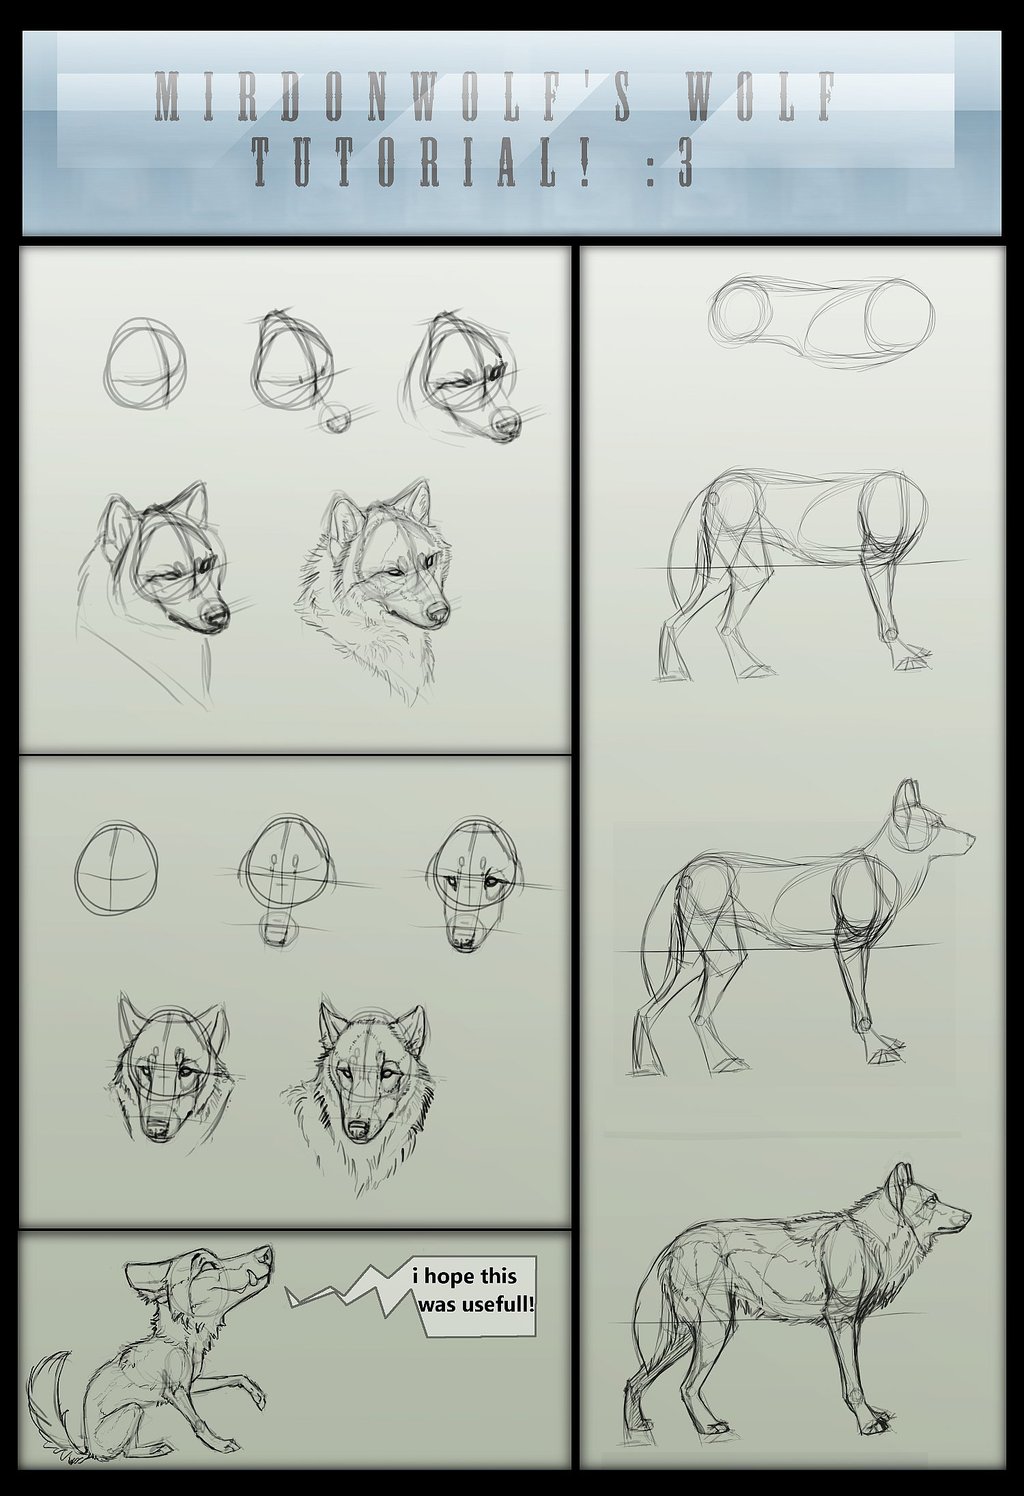 mirdonwolf__s_wolf_tutorial_by_mirdonwolf-d4lzq07.jpg